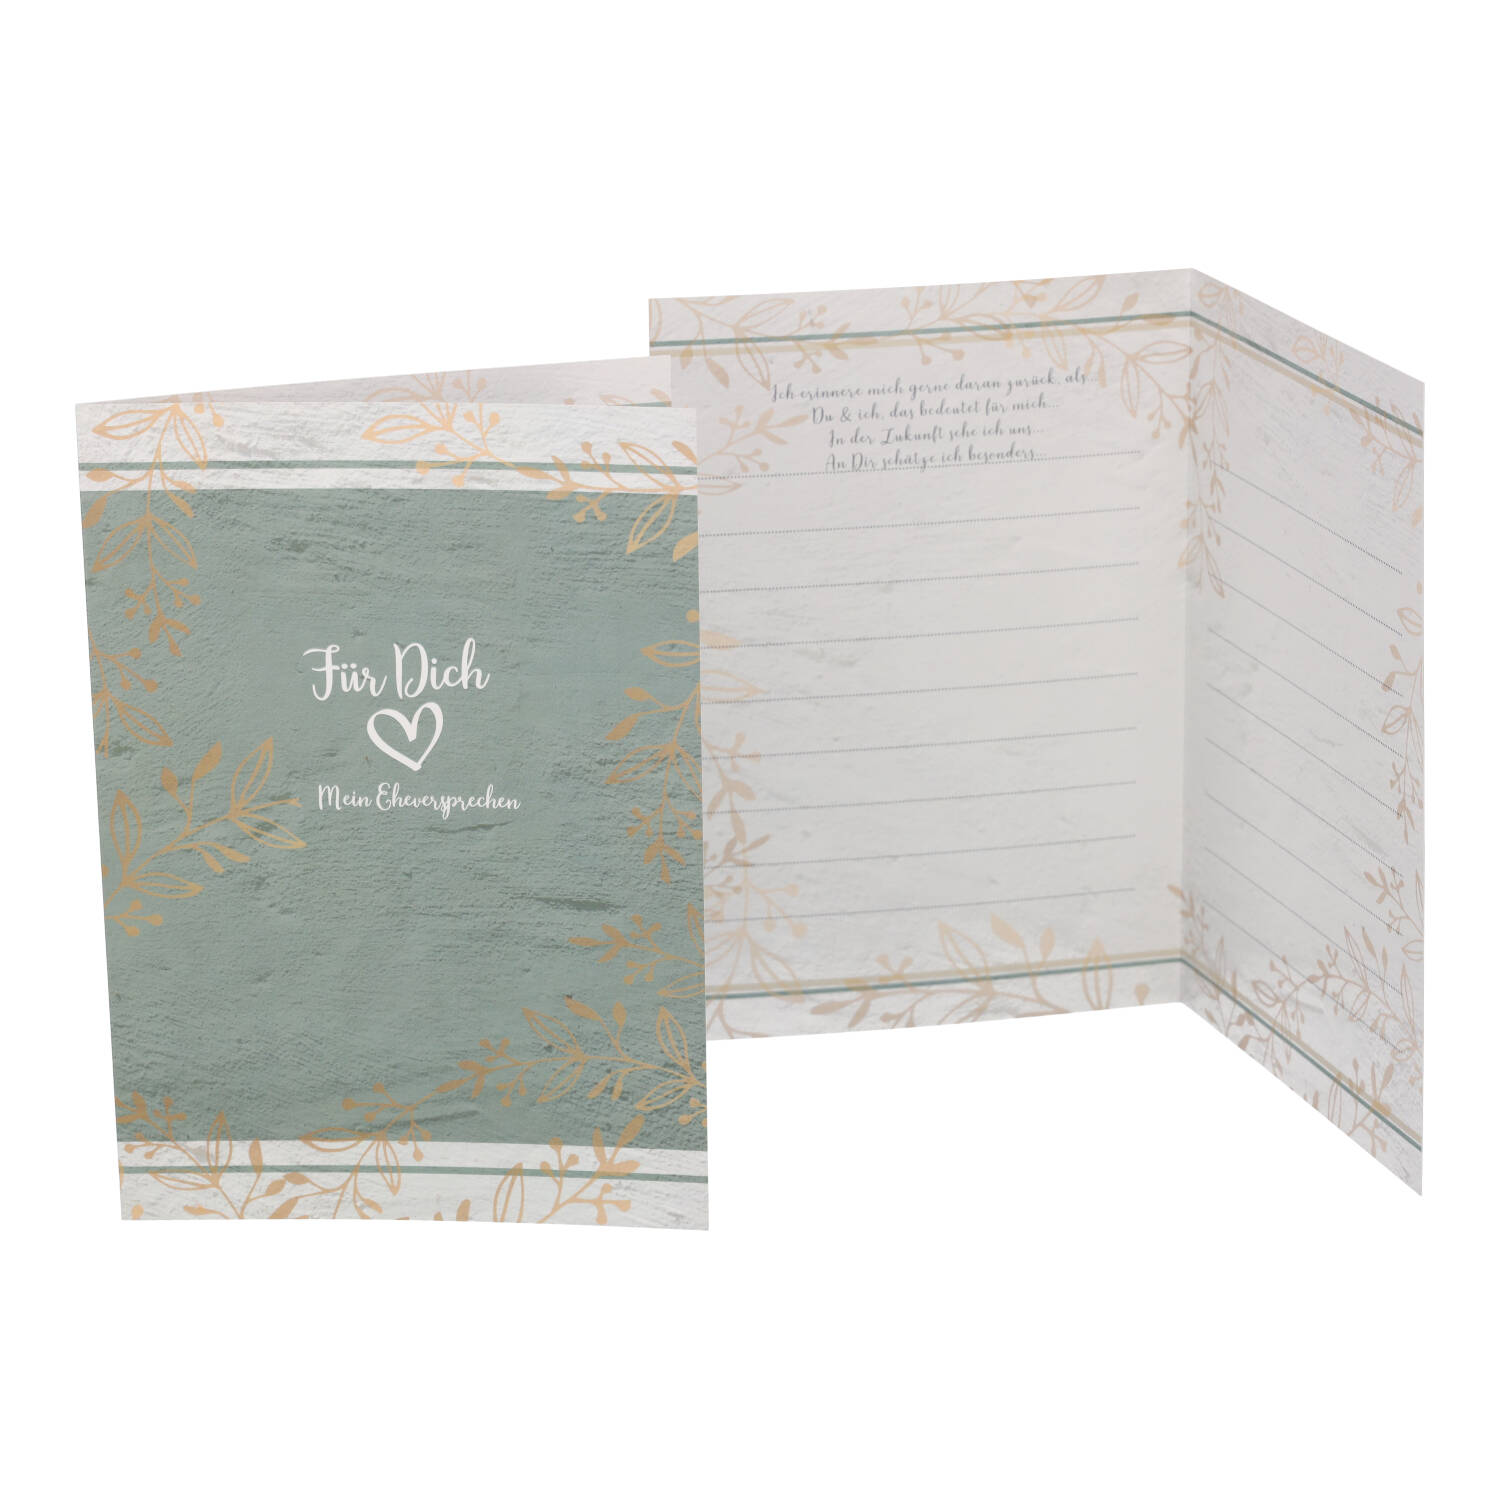 Liniertes Kartenset in gruen -beige mit Aufschrift Für dich mein Eheversprechen und floralem Muster